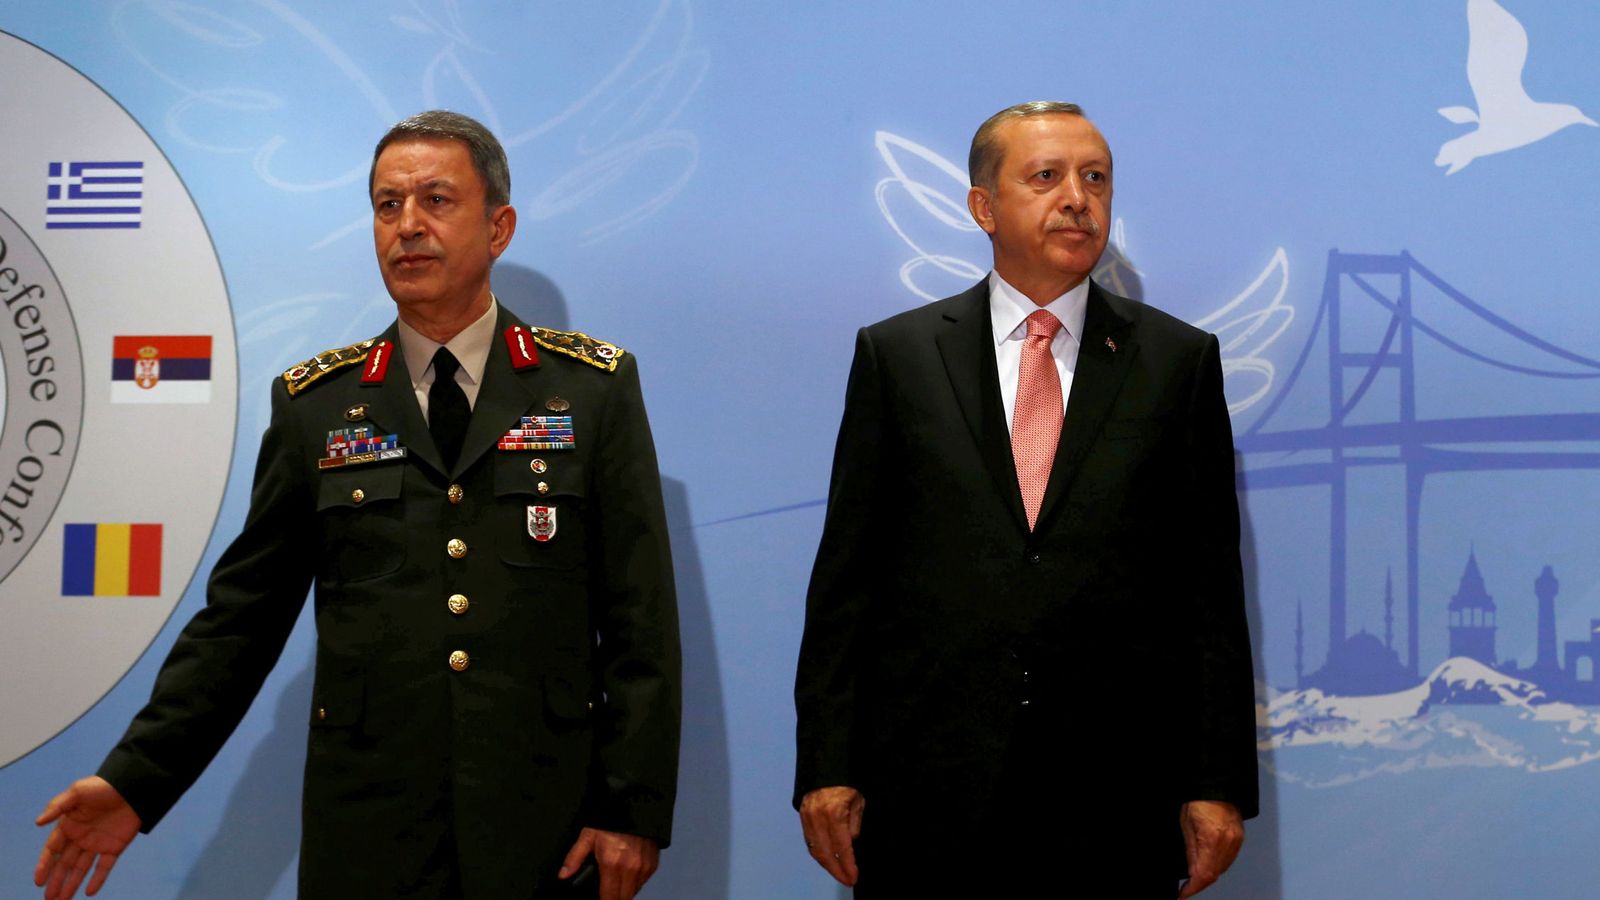 Foto: El presidente turco Tayyip Erdogan junto con el jefe del Estado Mayor, Hulusi Akar, en una imagen de archivo. (Reuters)